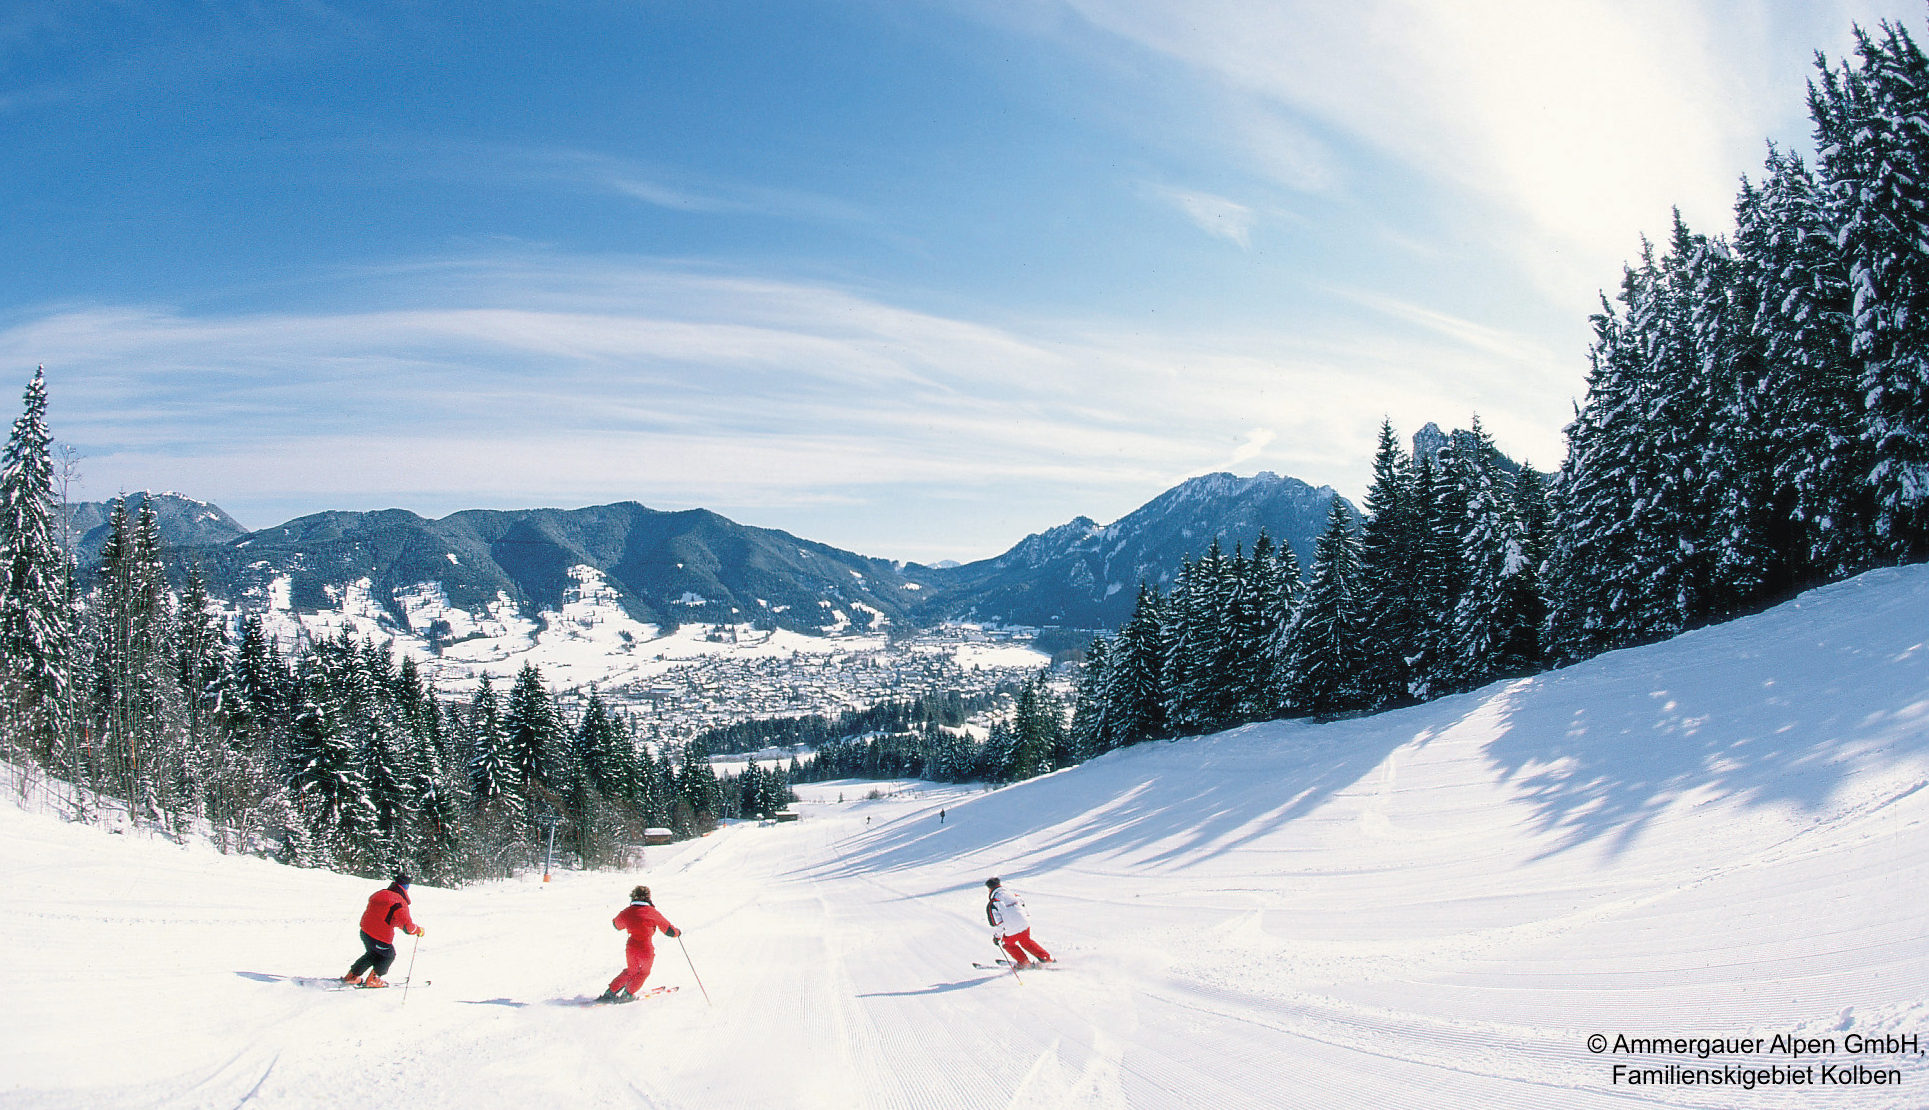 Oberammergau Ski. Альпы лыжи. Алтайские Альпы. Simulcam Alp Skiing. Alps ski skiing